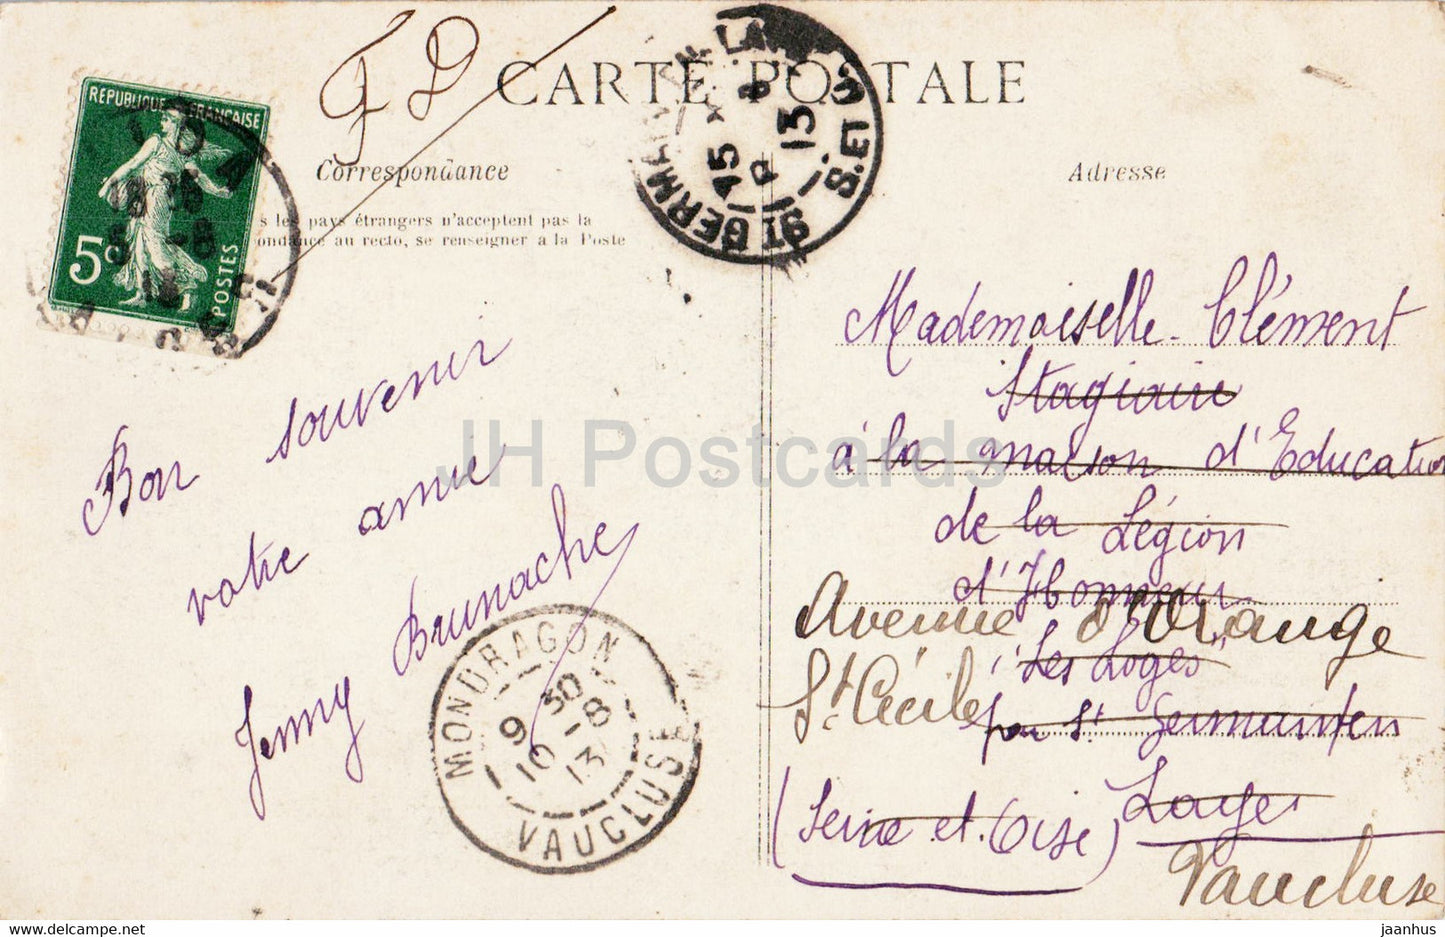 Bou Saada - La Rivière - 10 - carte postale ancienne - 1913 - Algérie - occasion